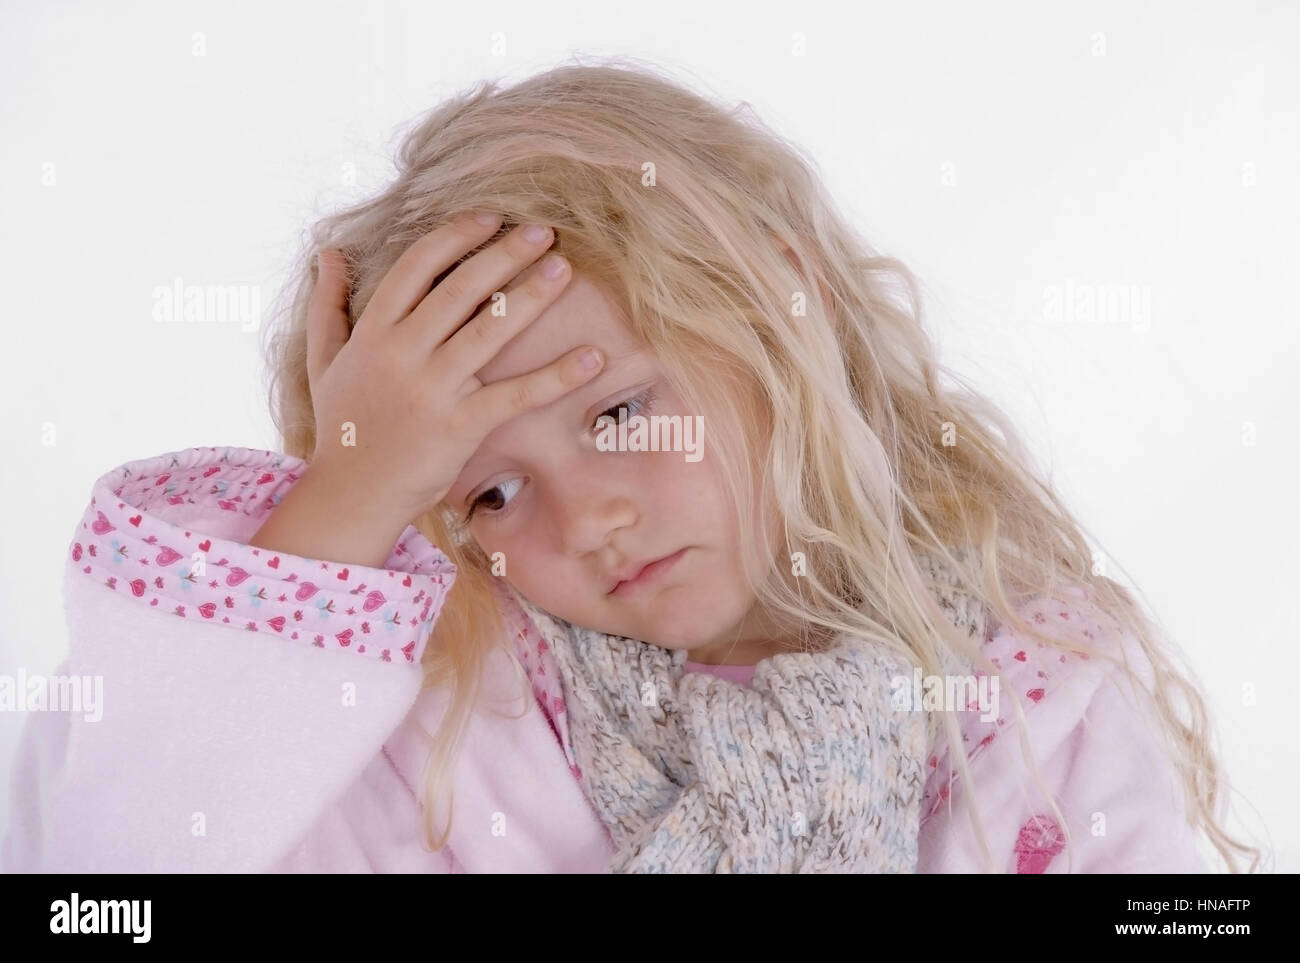 Maedchen, 6 Jahre, fuehlt sich nicht wohl - sick girl with headache Stock Photo